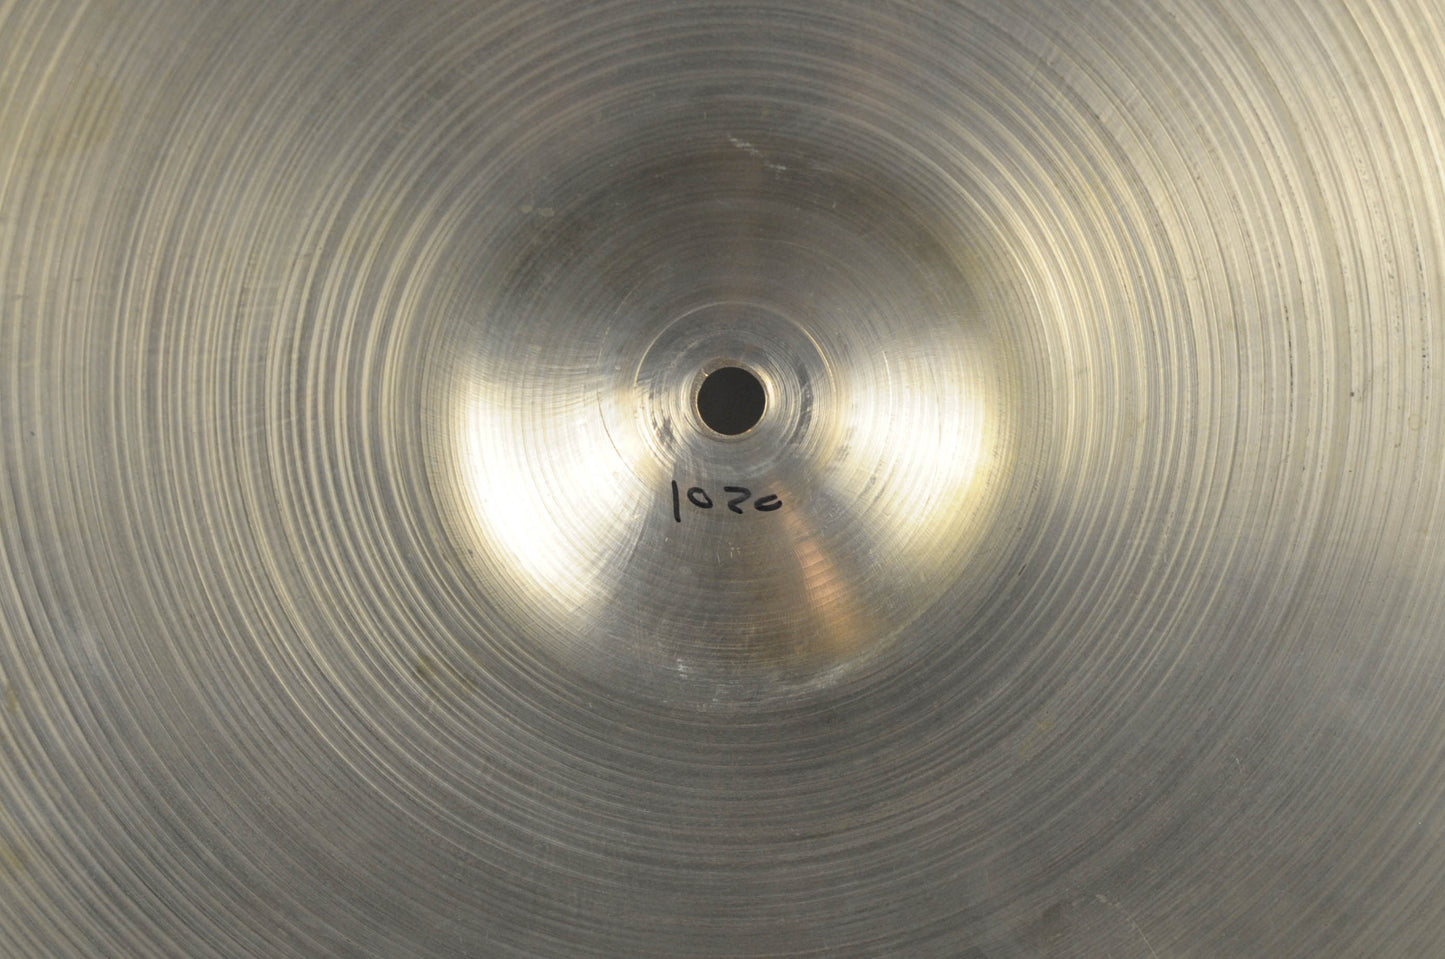 1960s Zildjian A 16" Paper Thin Crash Cymbal 1020g